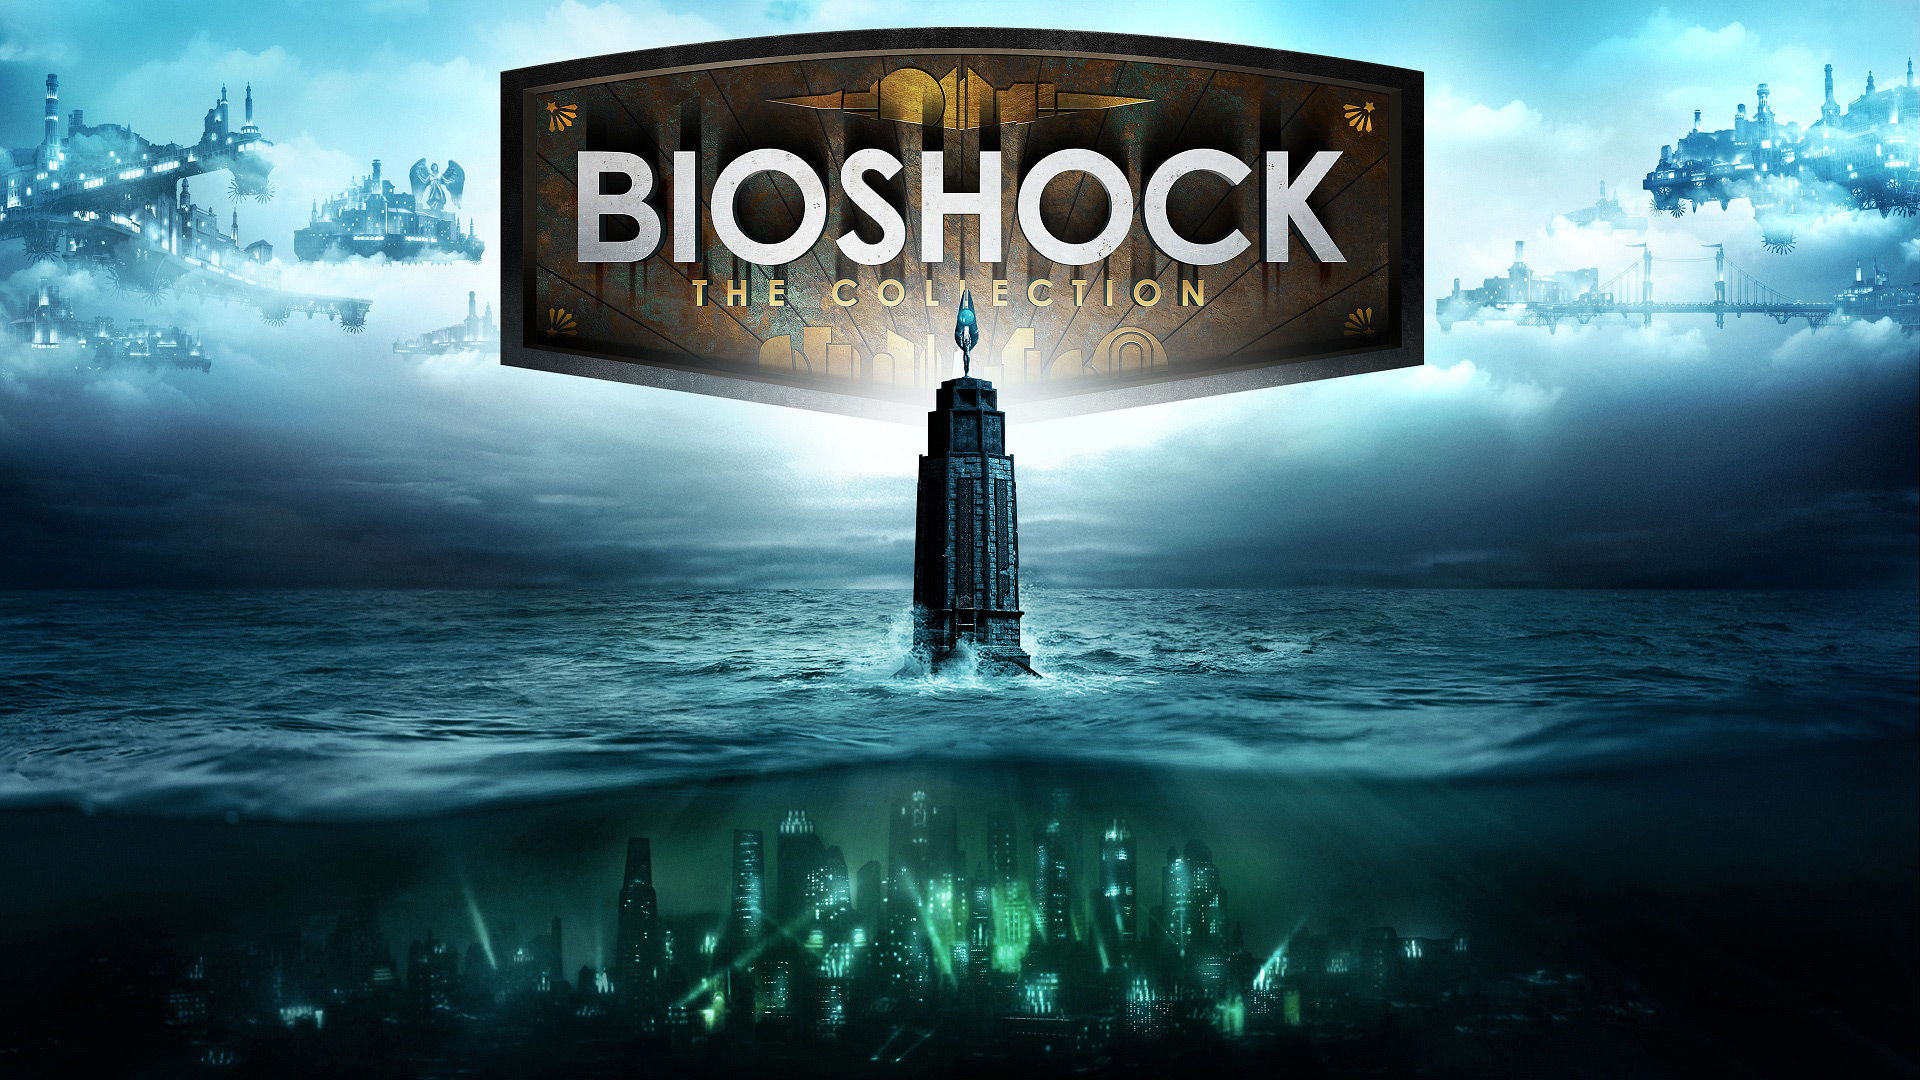 Bioshock Infinite Launch Trailer 